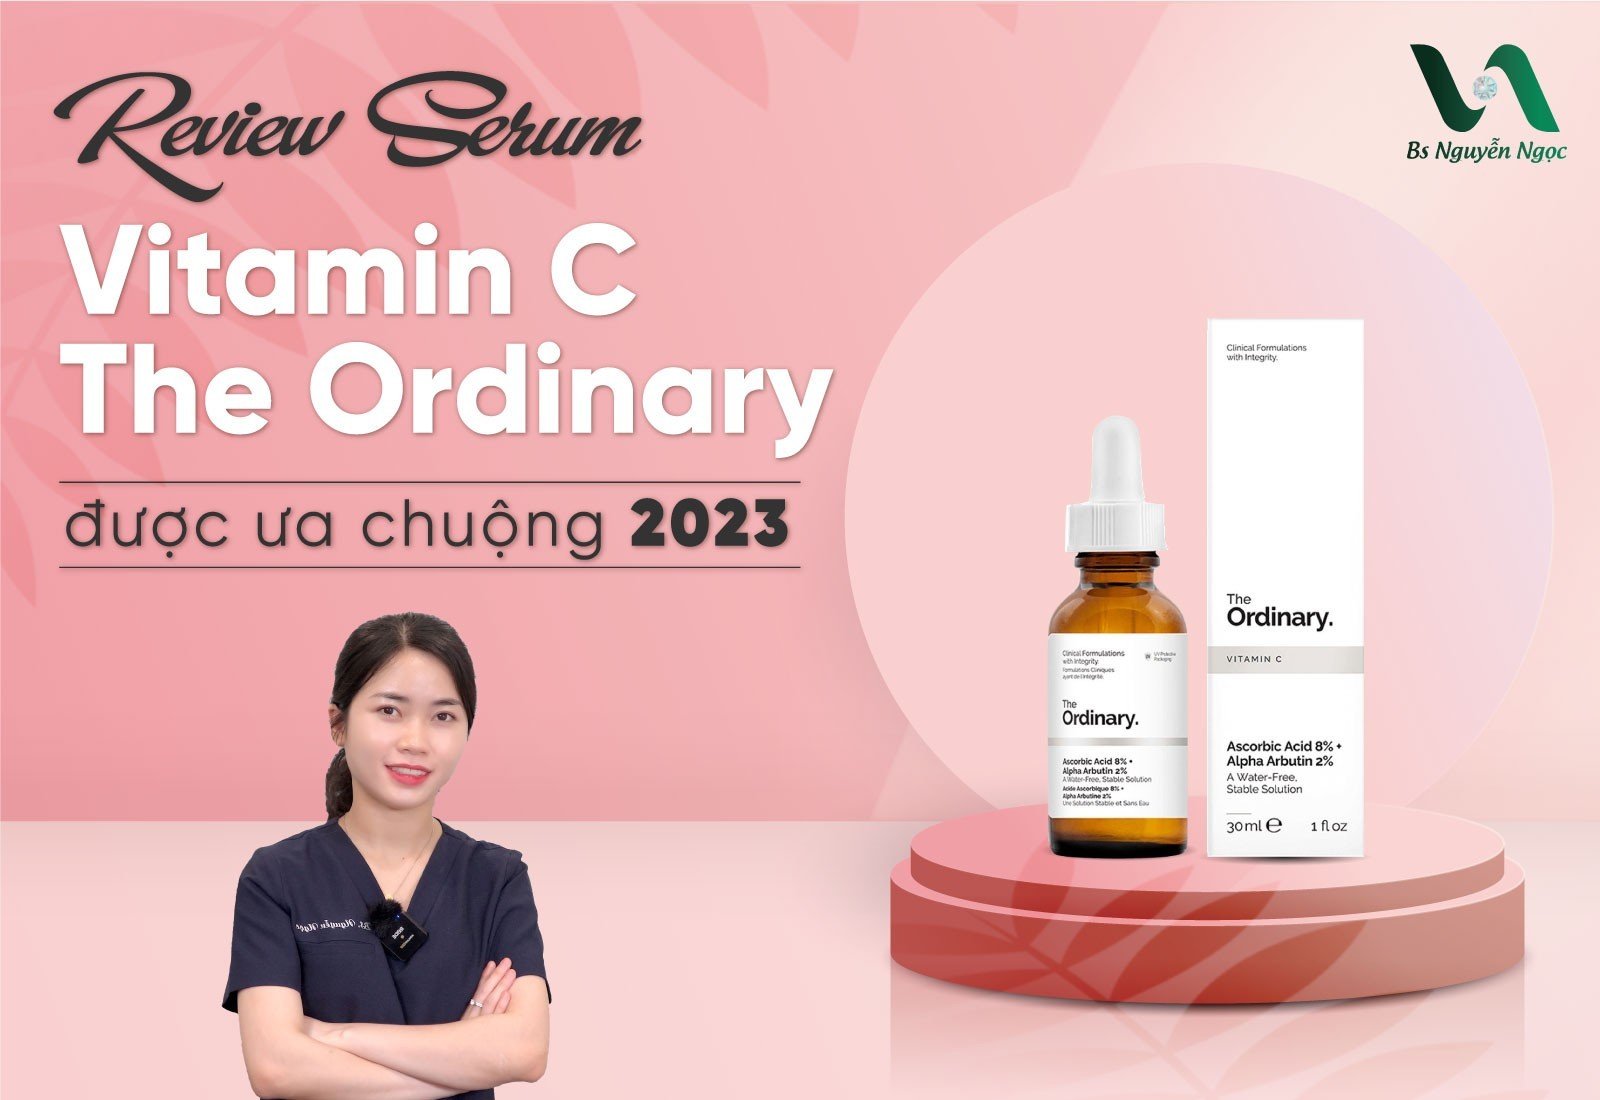 Review Serum Vitamin C The Ordinary được ưa chuộng 2023